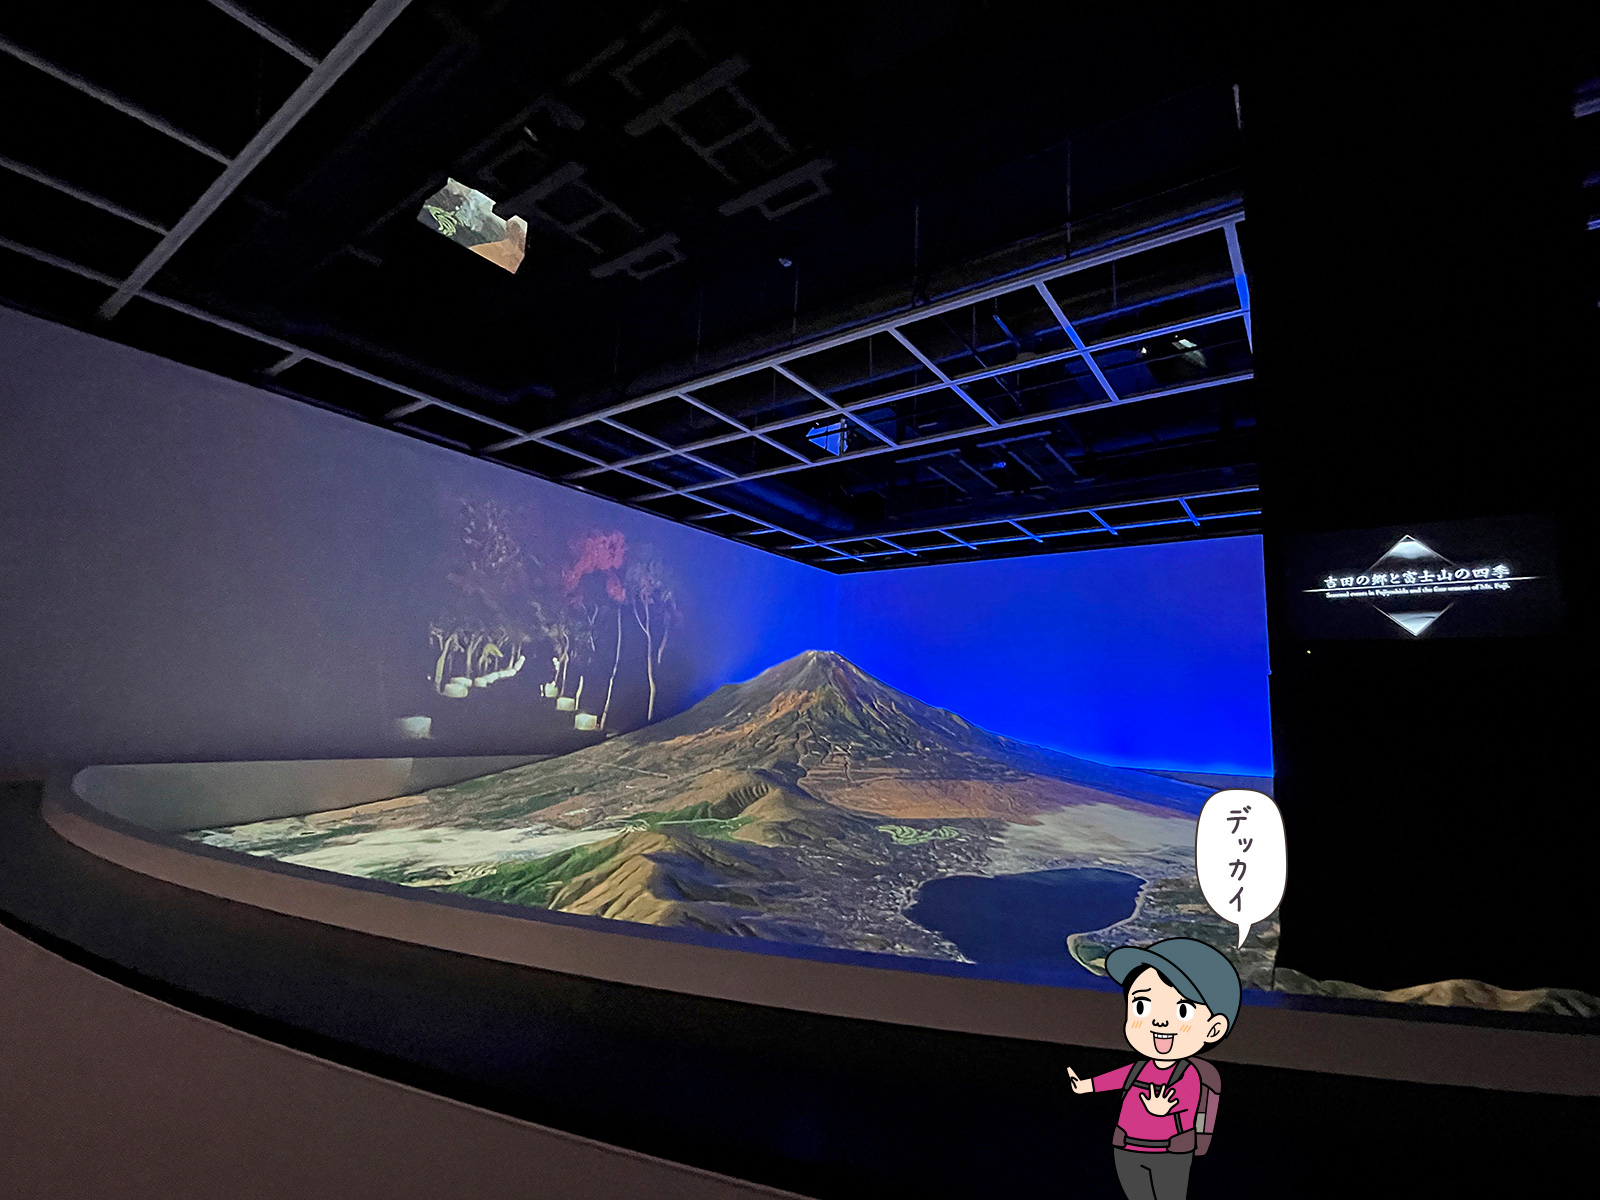 ふじさんミュージアムの富士山模型の写真と登山者のイラスト